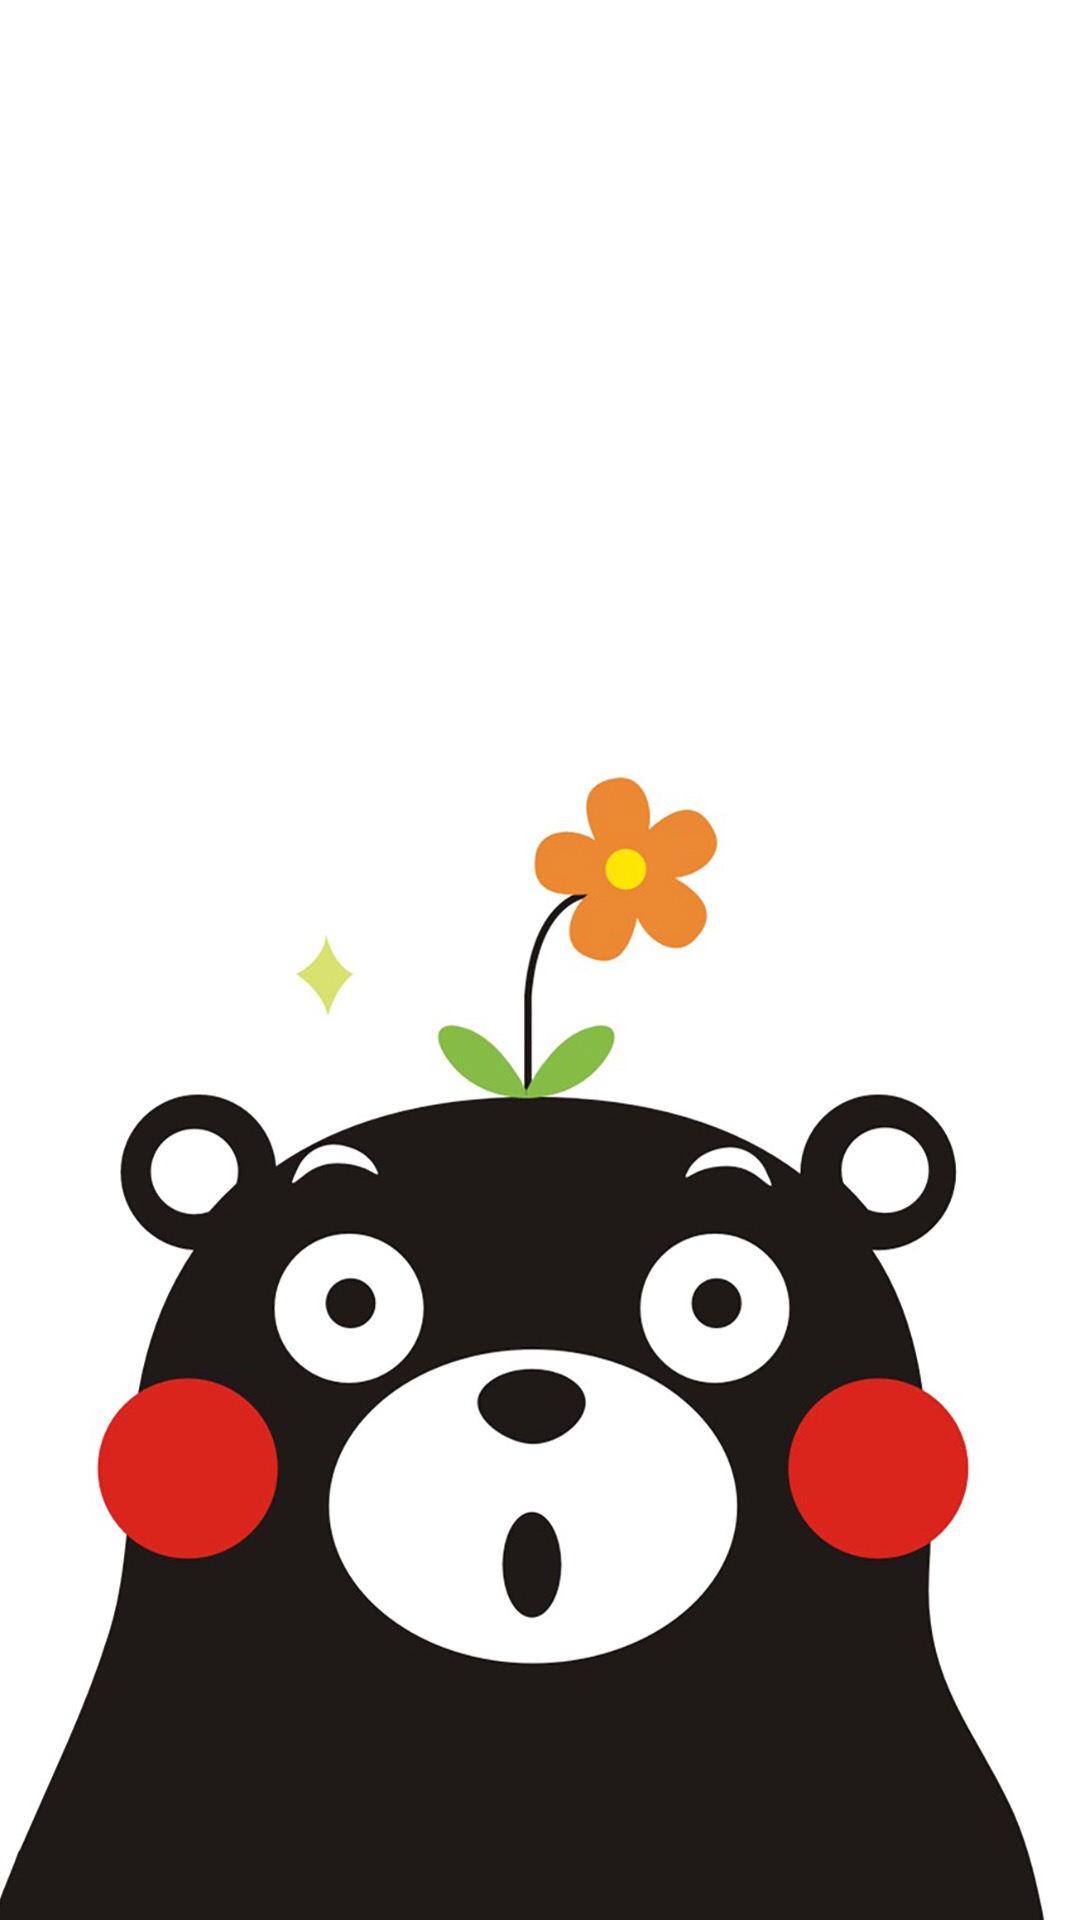 熊本熊手机壁纸高清 熊本熊主题手机壁纸(5)